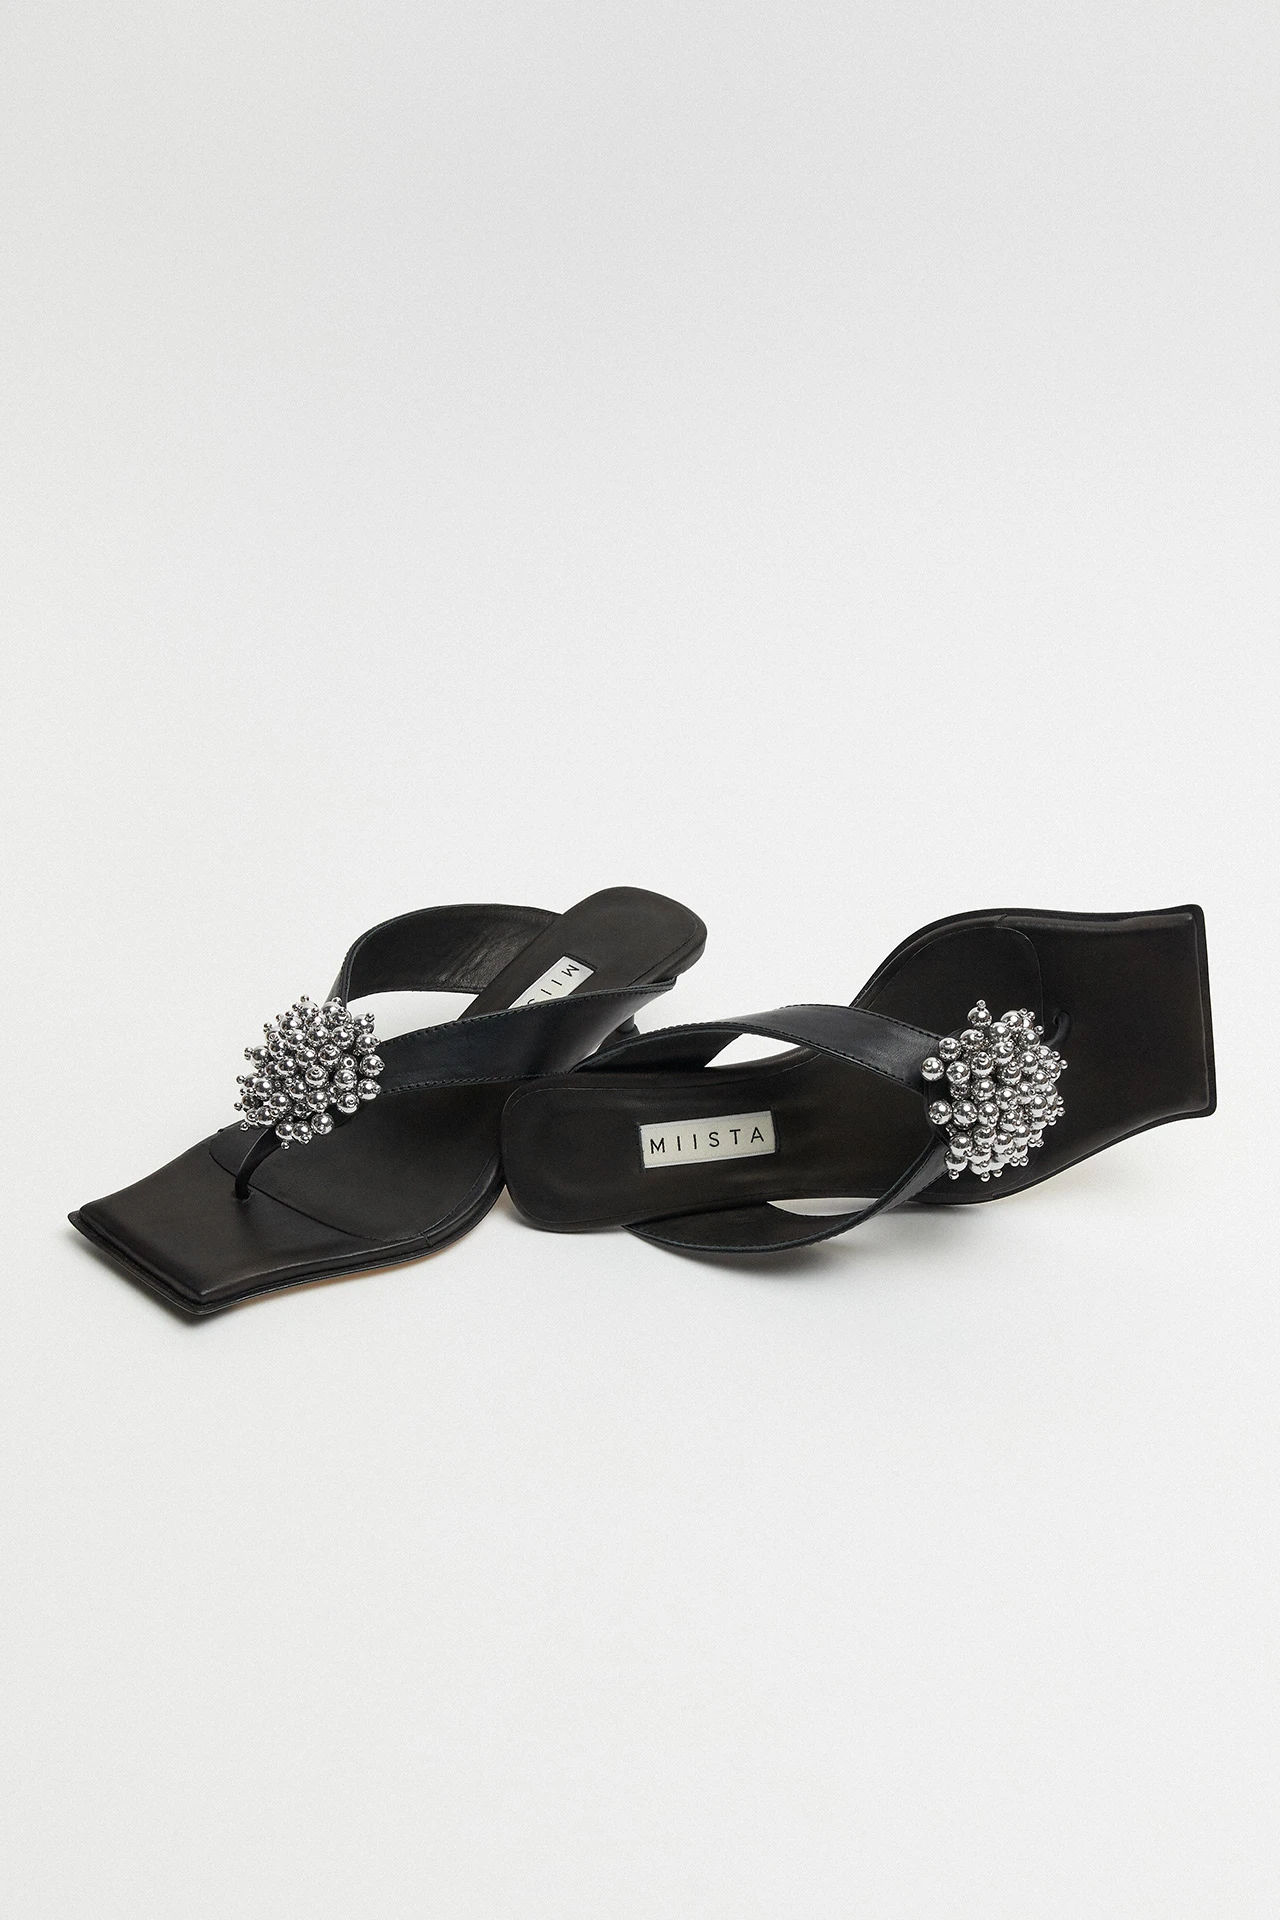 Miista-Narela-Black-Sandals-02